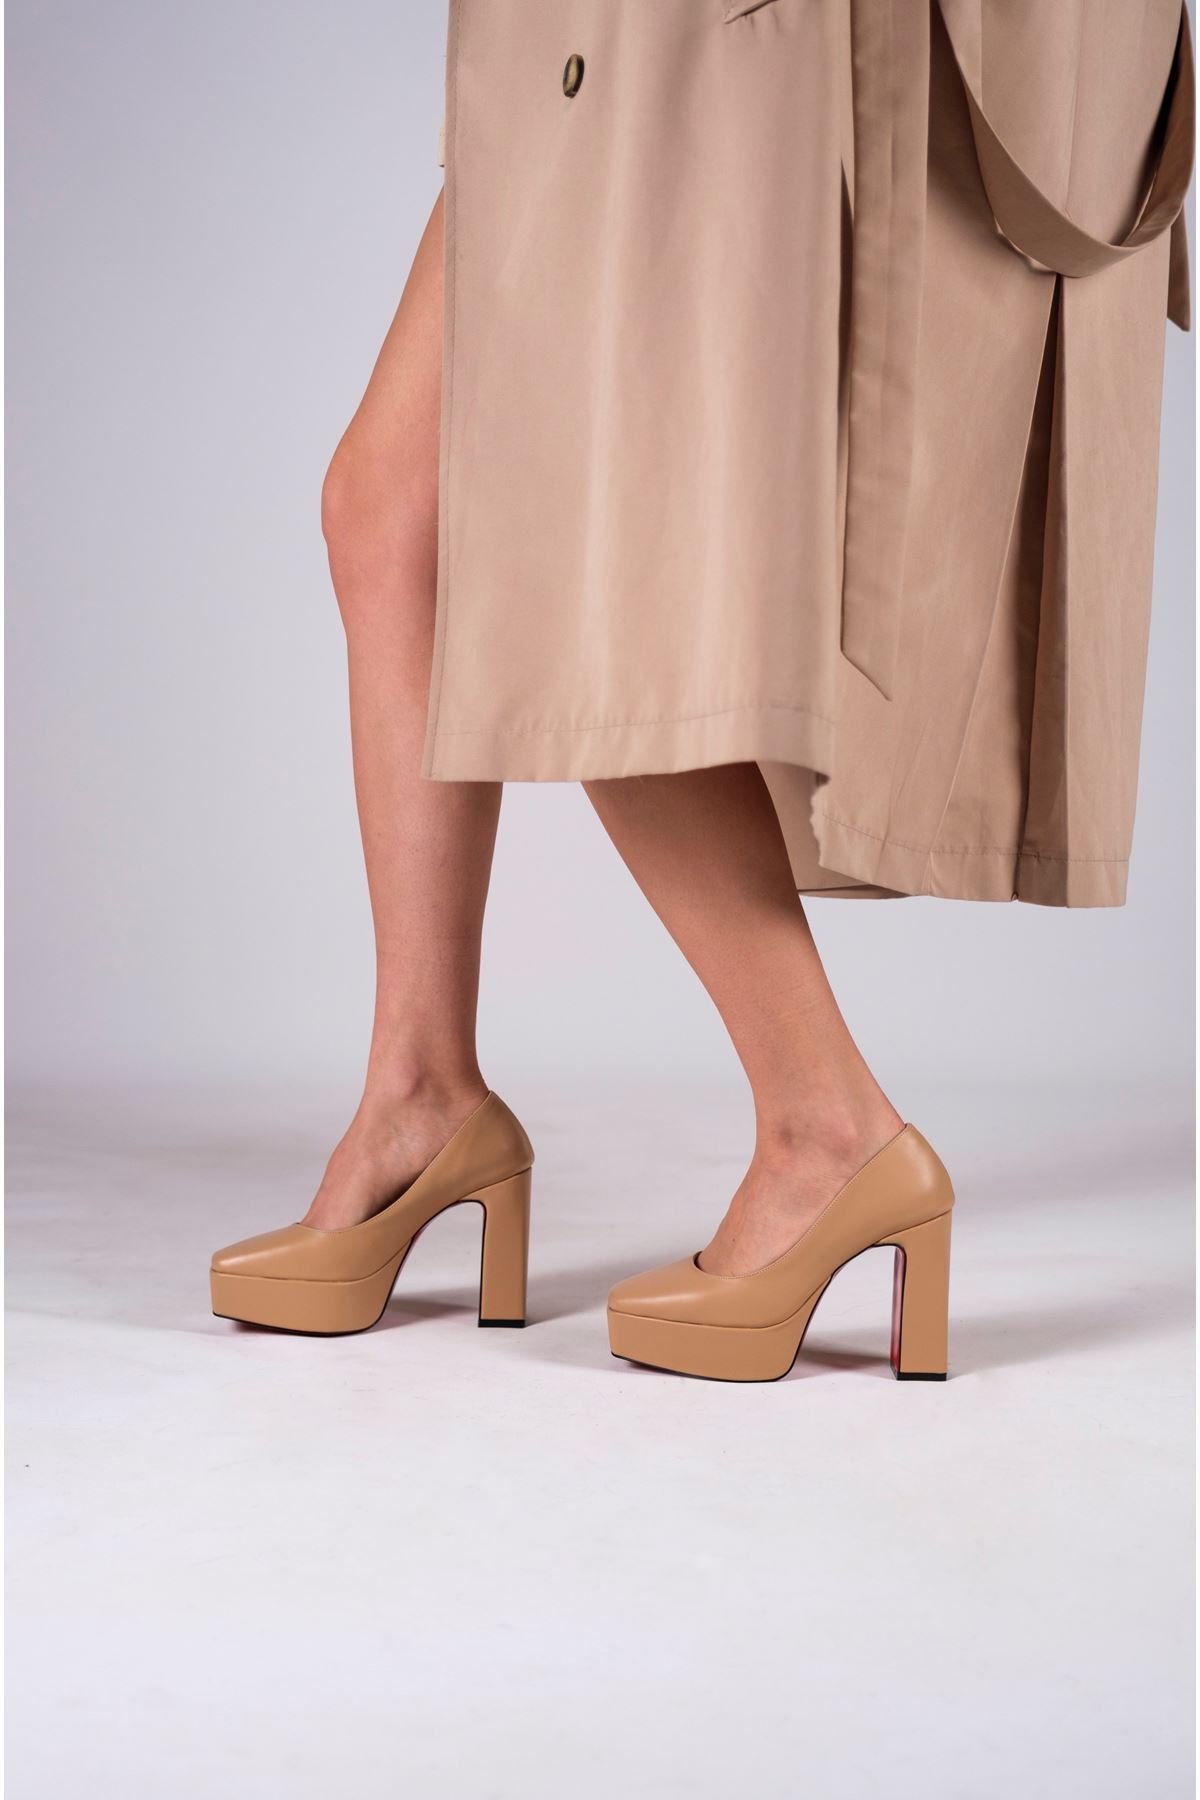 Nude Cilt Kadın Kalın Topuklu Ayakkabı Stiletto Ecovan